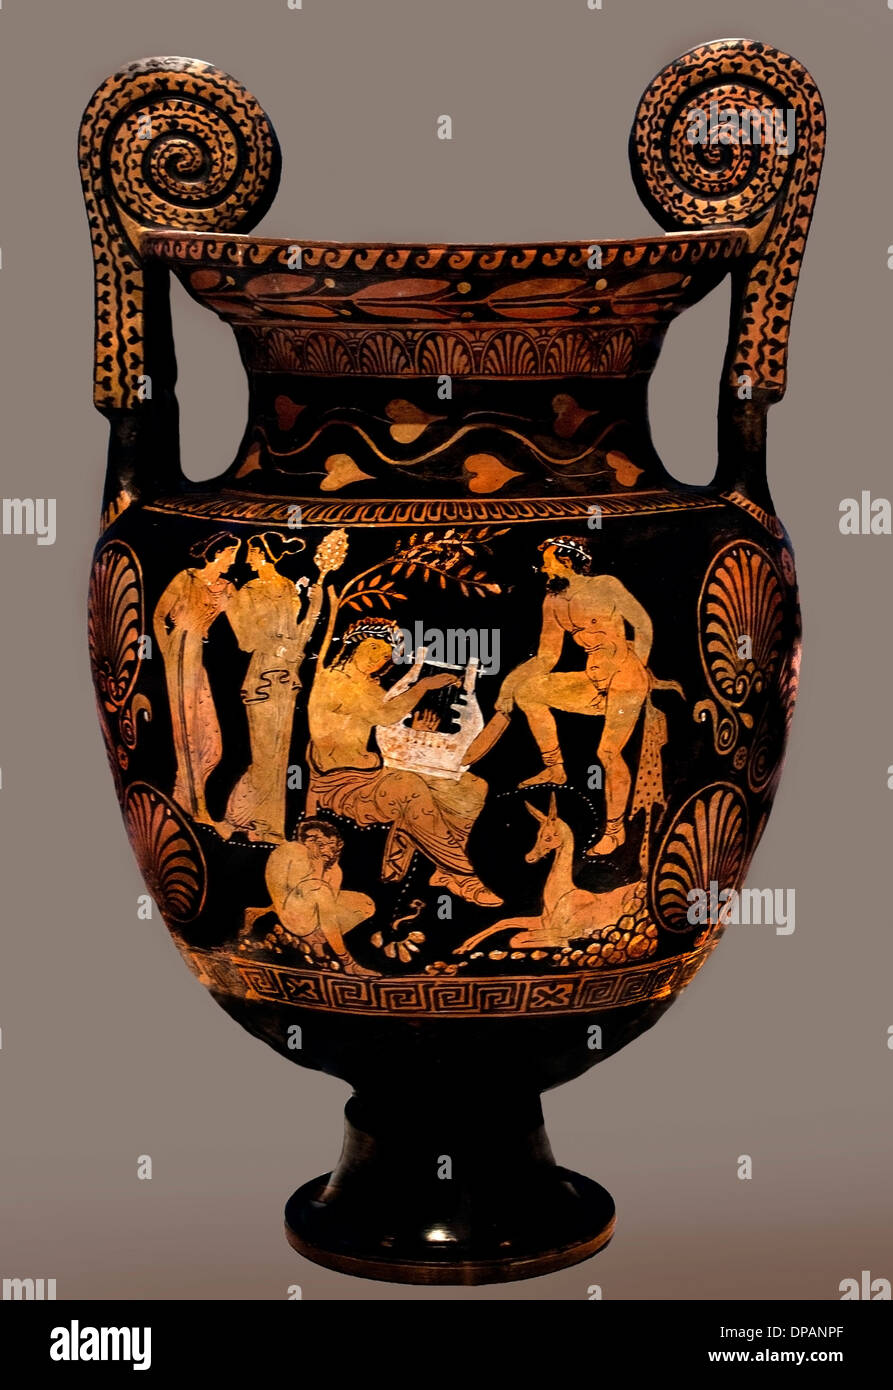 Vaso greco antico immagini e fotografie stock ad alta risoluzione - Alamy